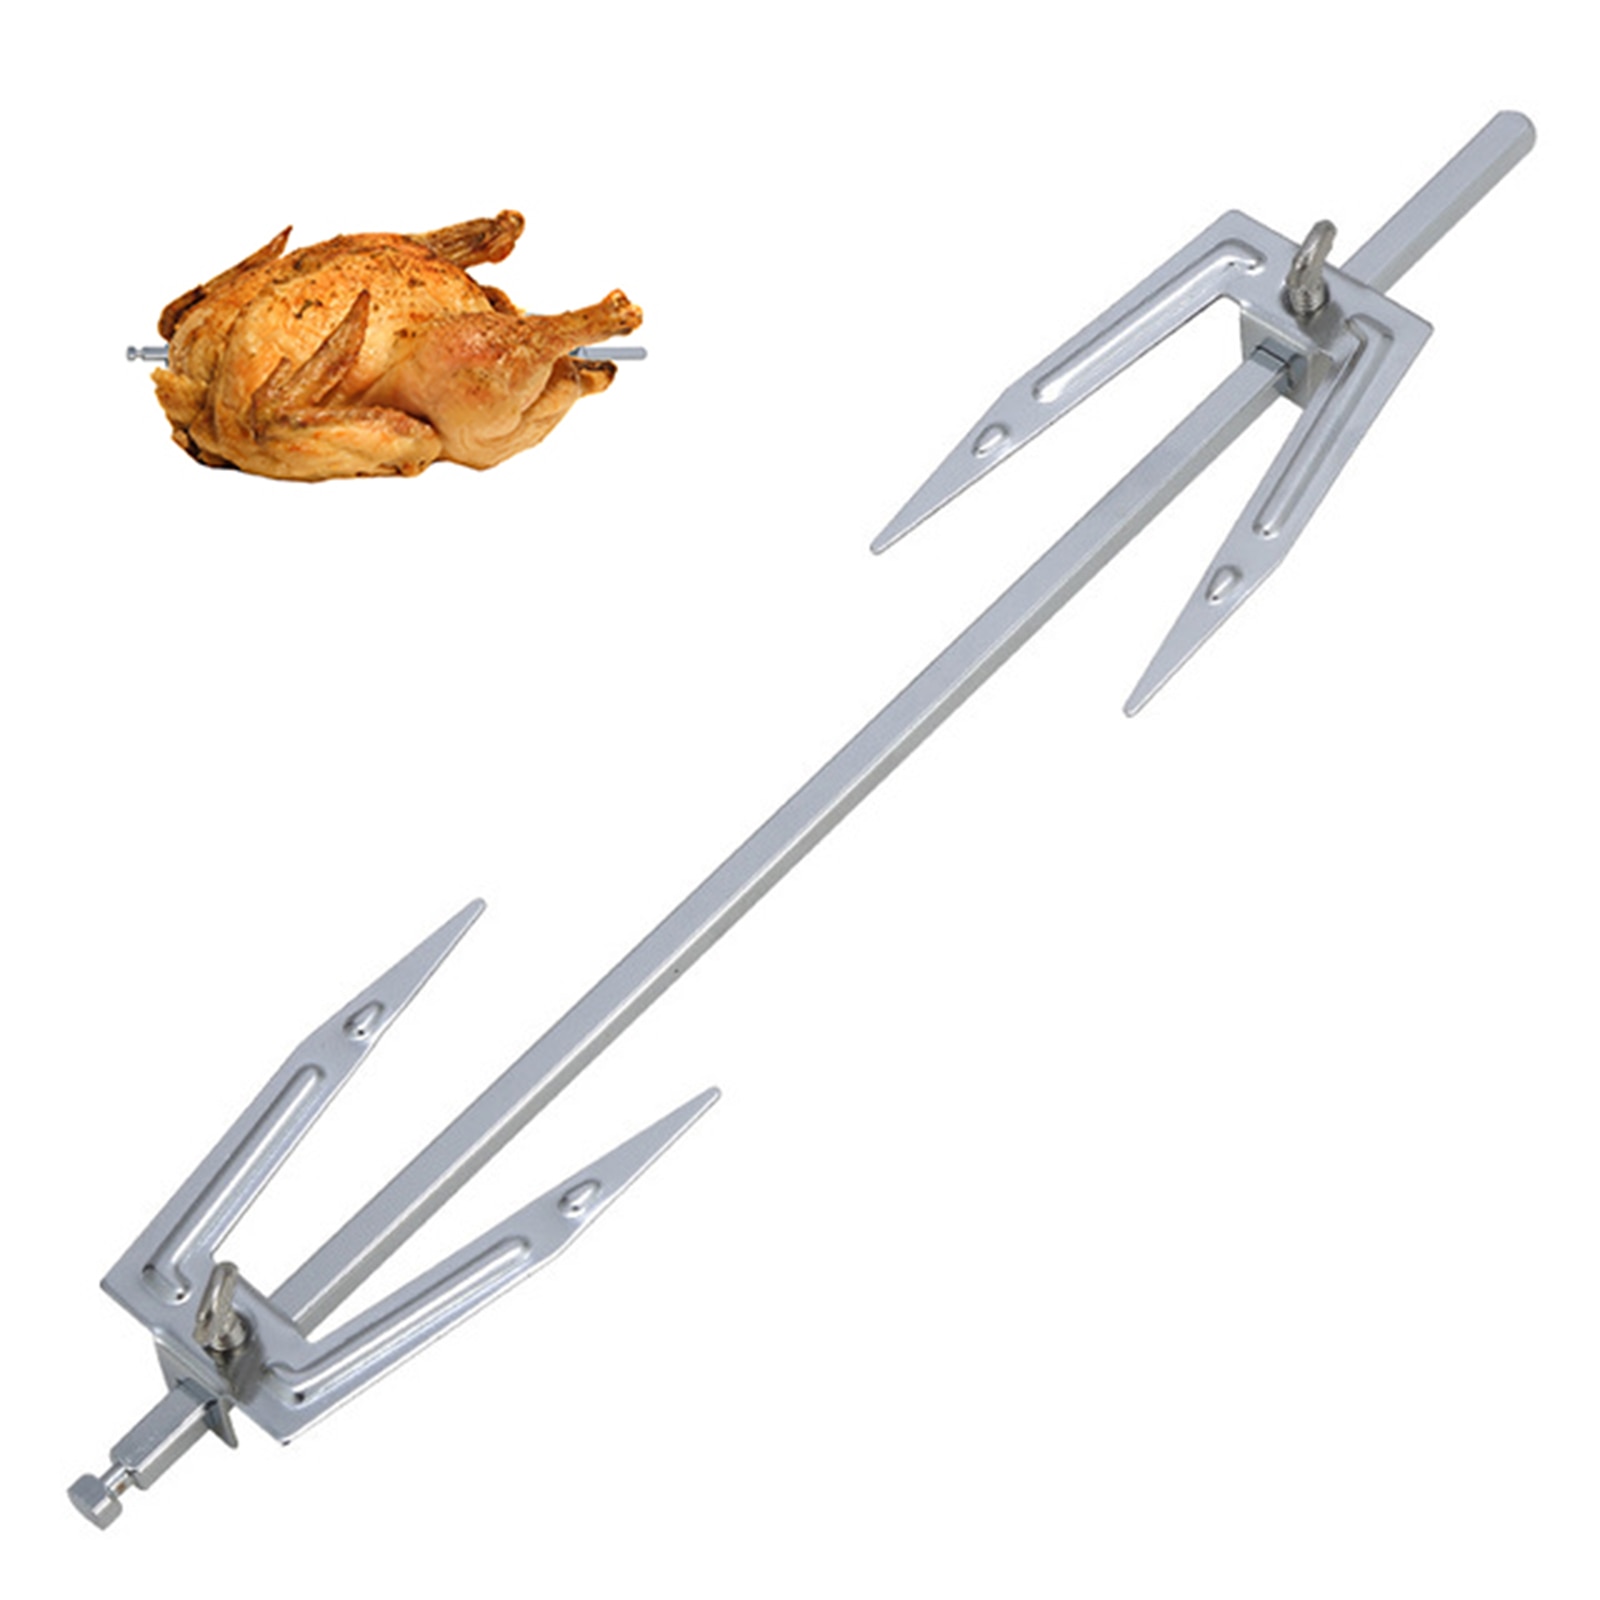 Air frituregrej rotisserie tilbehør grillet kyllingegaffel rustfrit stål stegt kyllingegaffel rotisseriedele 27.7cm længde